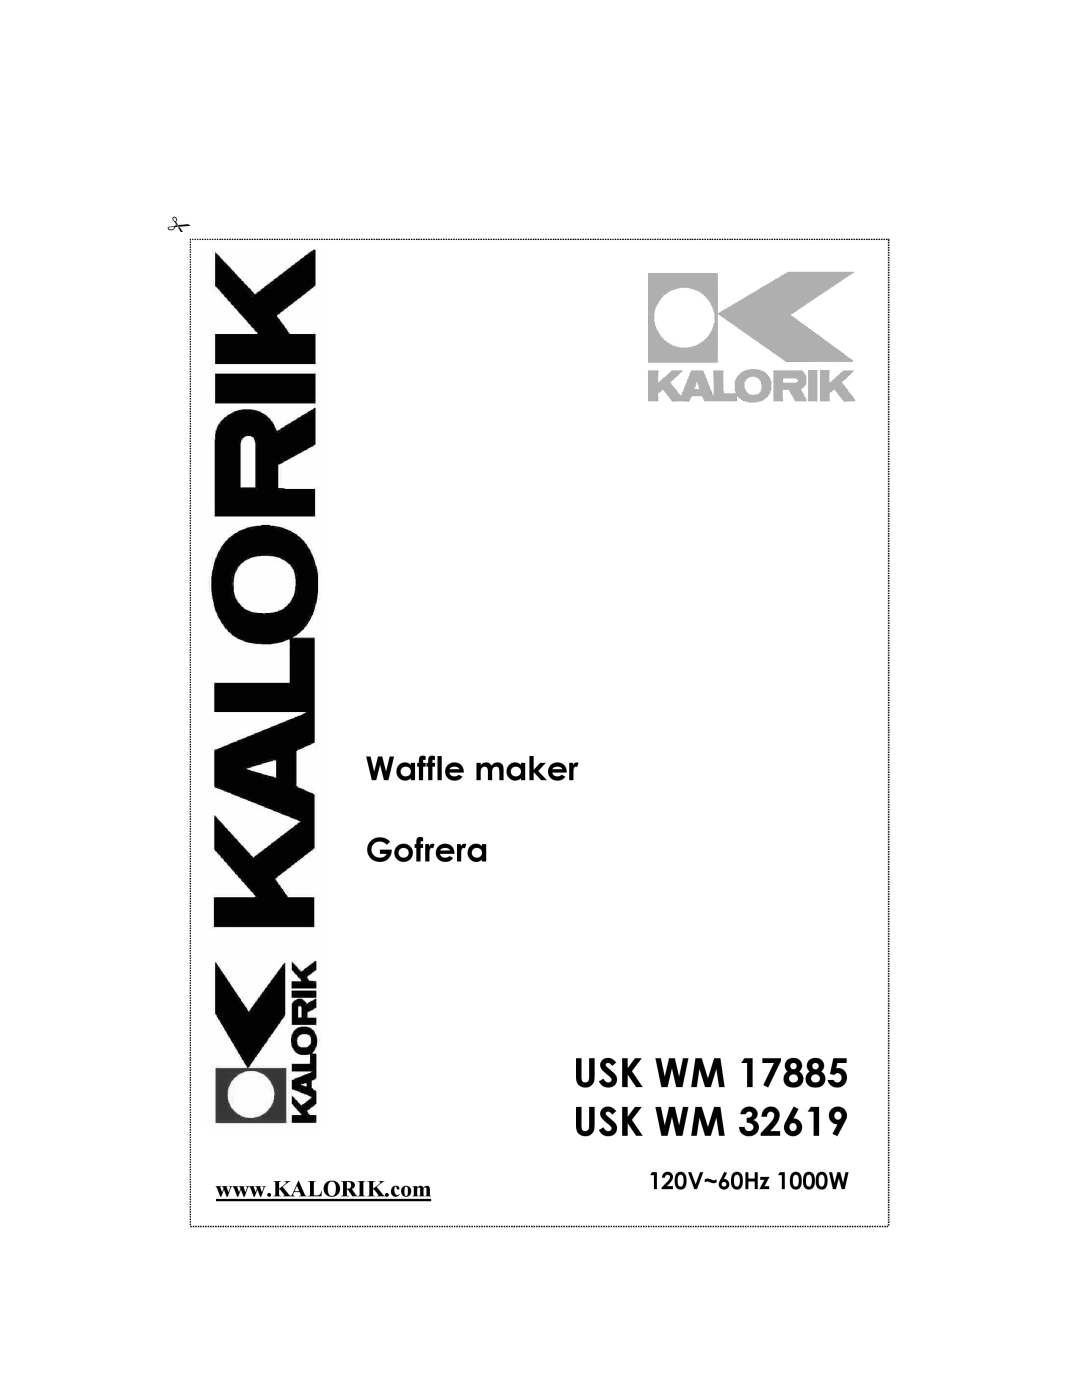 Kalorik usk wm 17885, usk wm 32619 manual Usk Wm Usk Wm, Waffle maker Gofrera, 120V~60Hz 1000W 